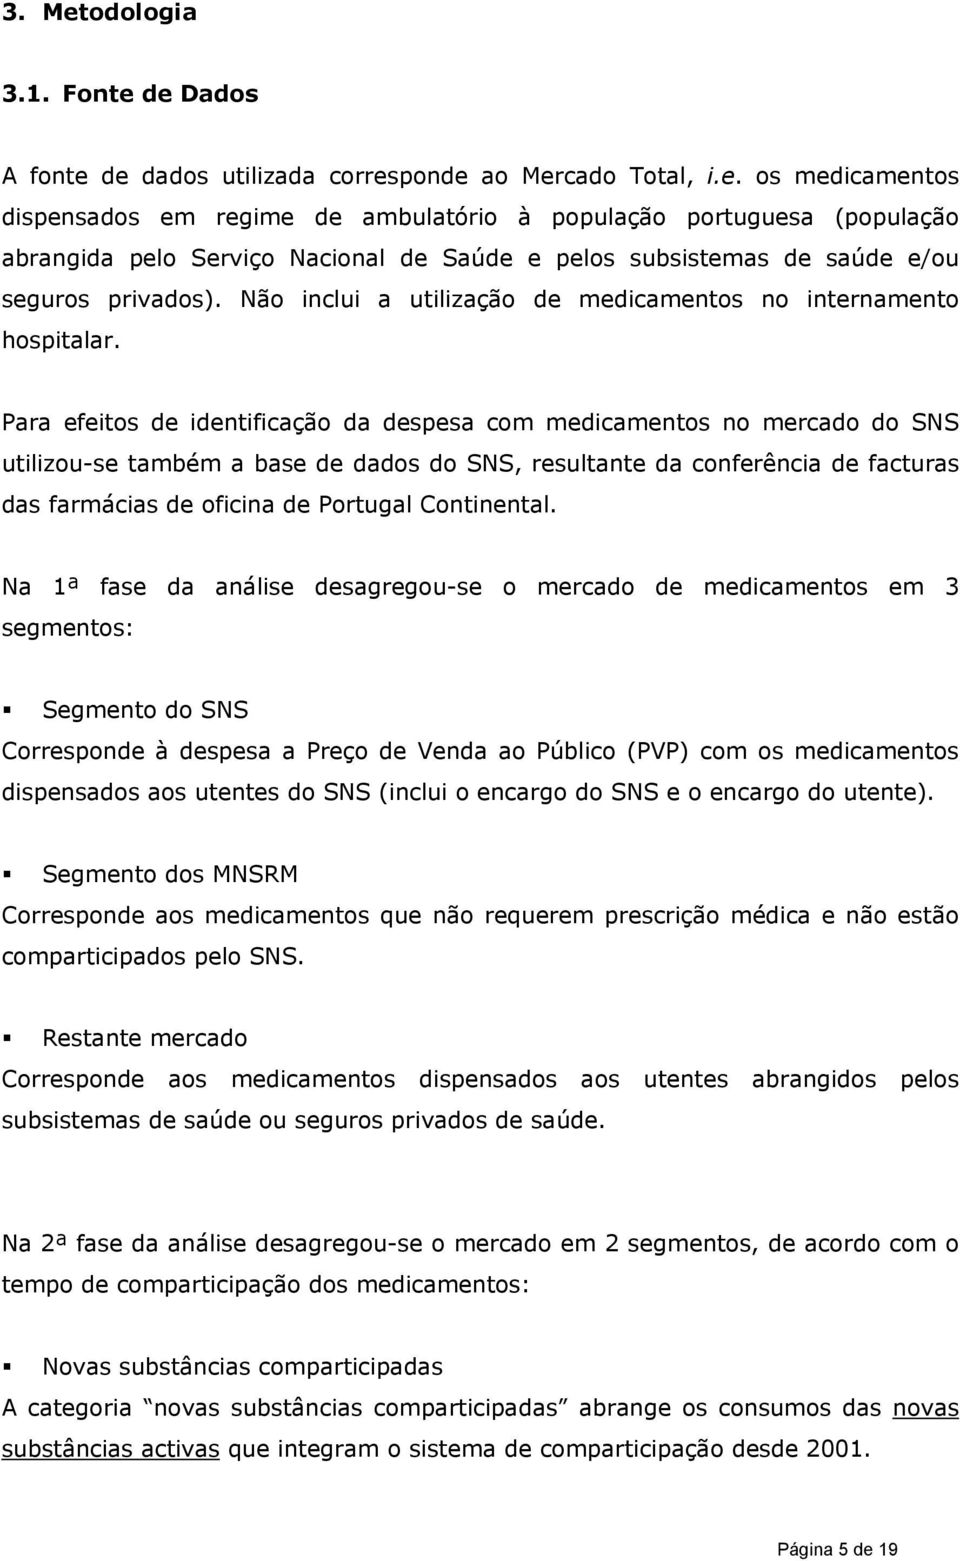 Para efeitos de identificação da despesa com medicamentos no mercado do SNS utilizou-se também a base de dados do SNS, resultante da conferência de facturas das farmácias de oficina de Portugal